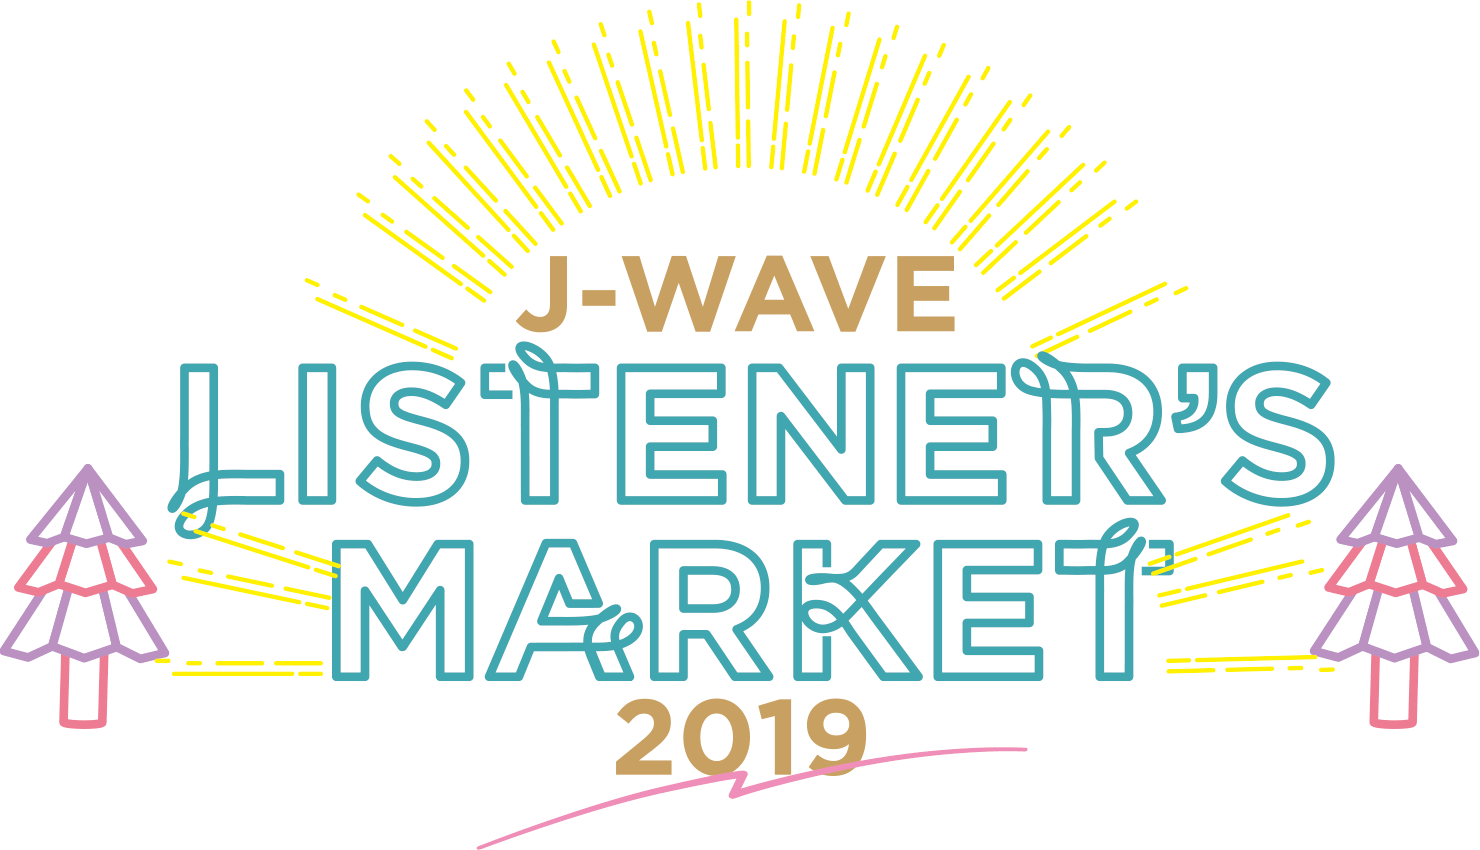 J-WAVE LISTENER’S MARKET 2019